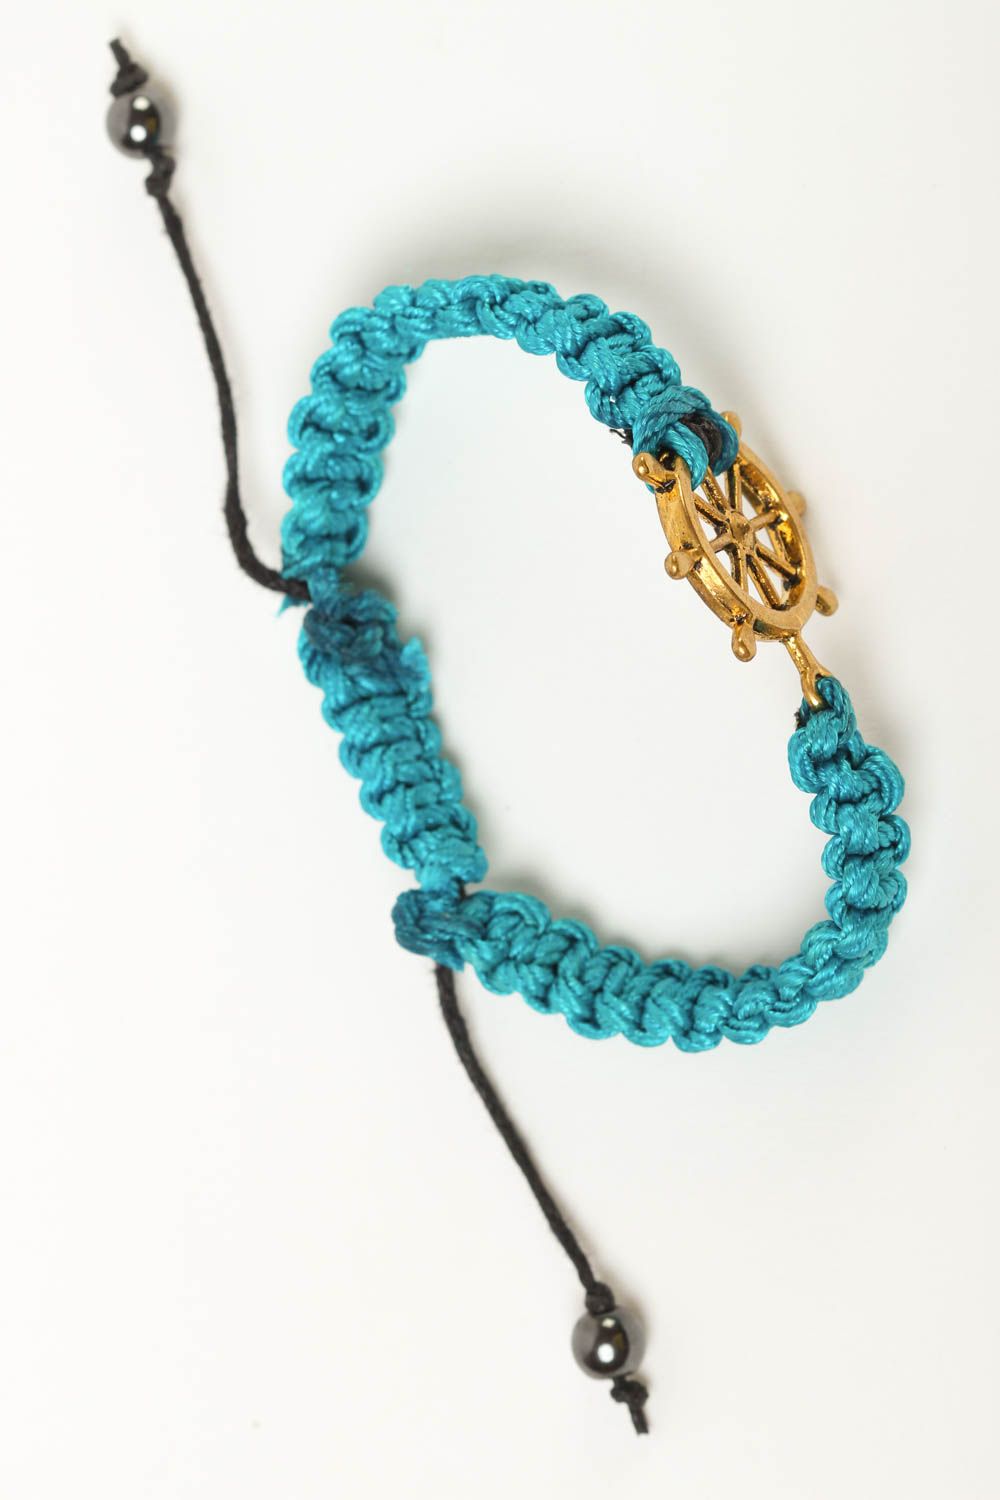 Браслет ручной работы браслет из шнурков голбуого цвета плетеный браслет фото 2